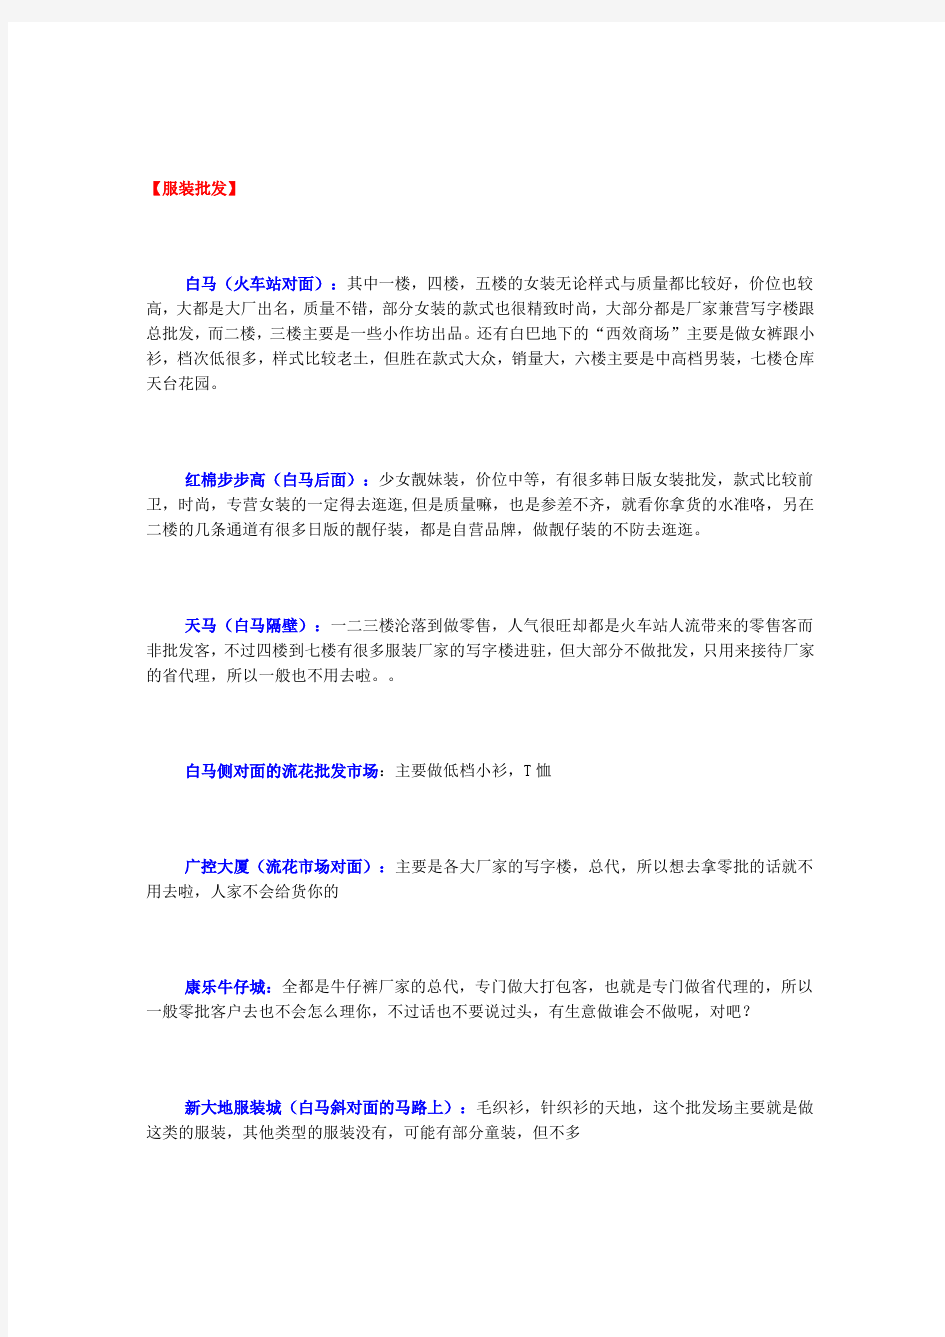 广州各行业批发市场汇总表